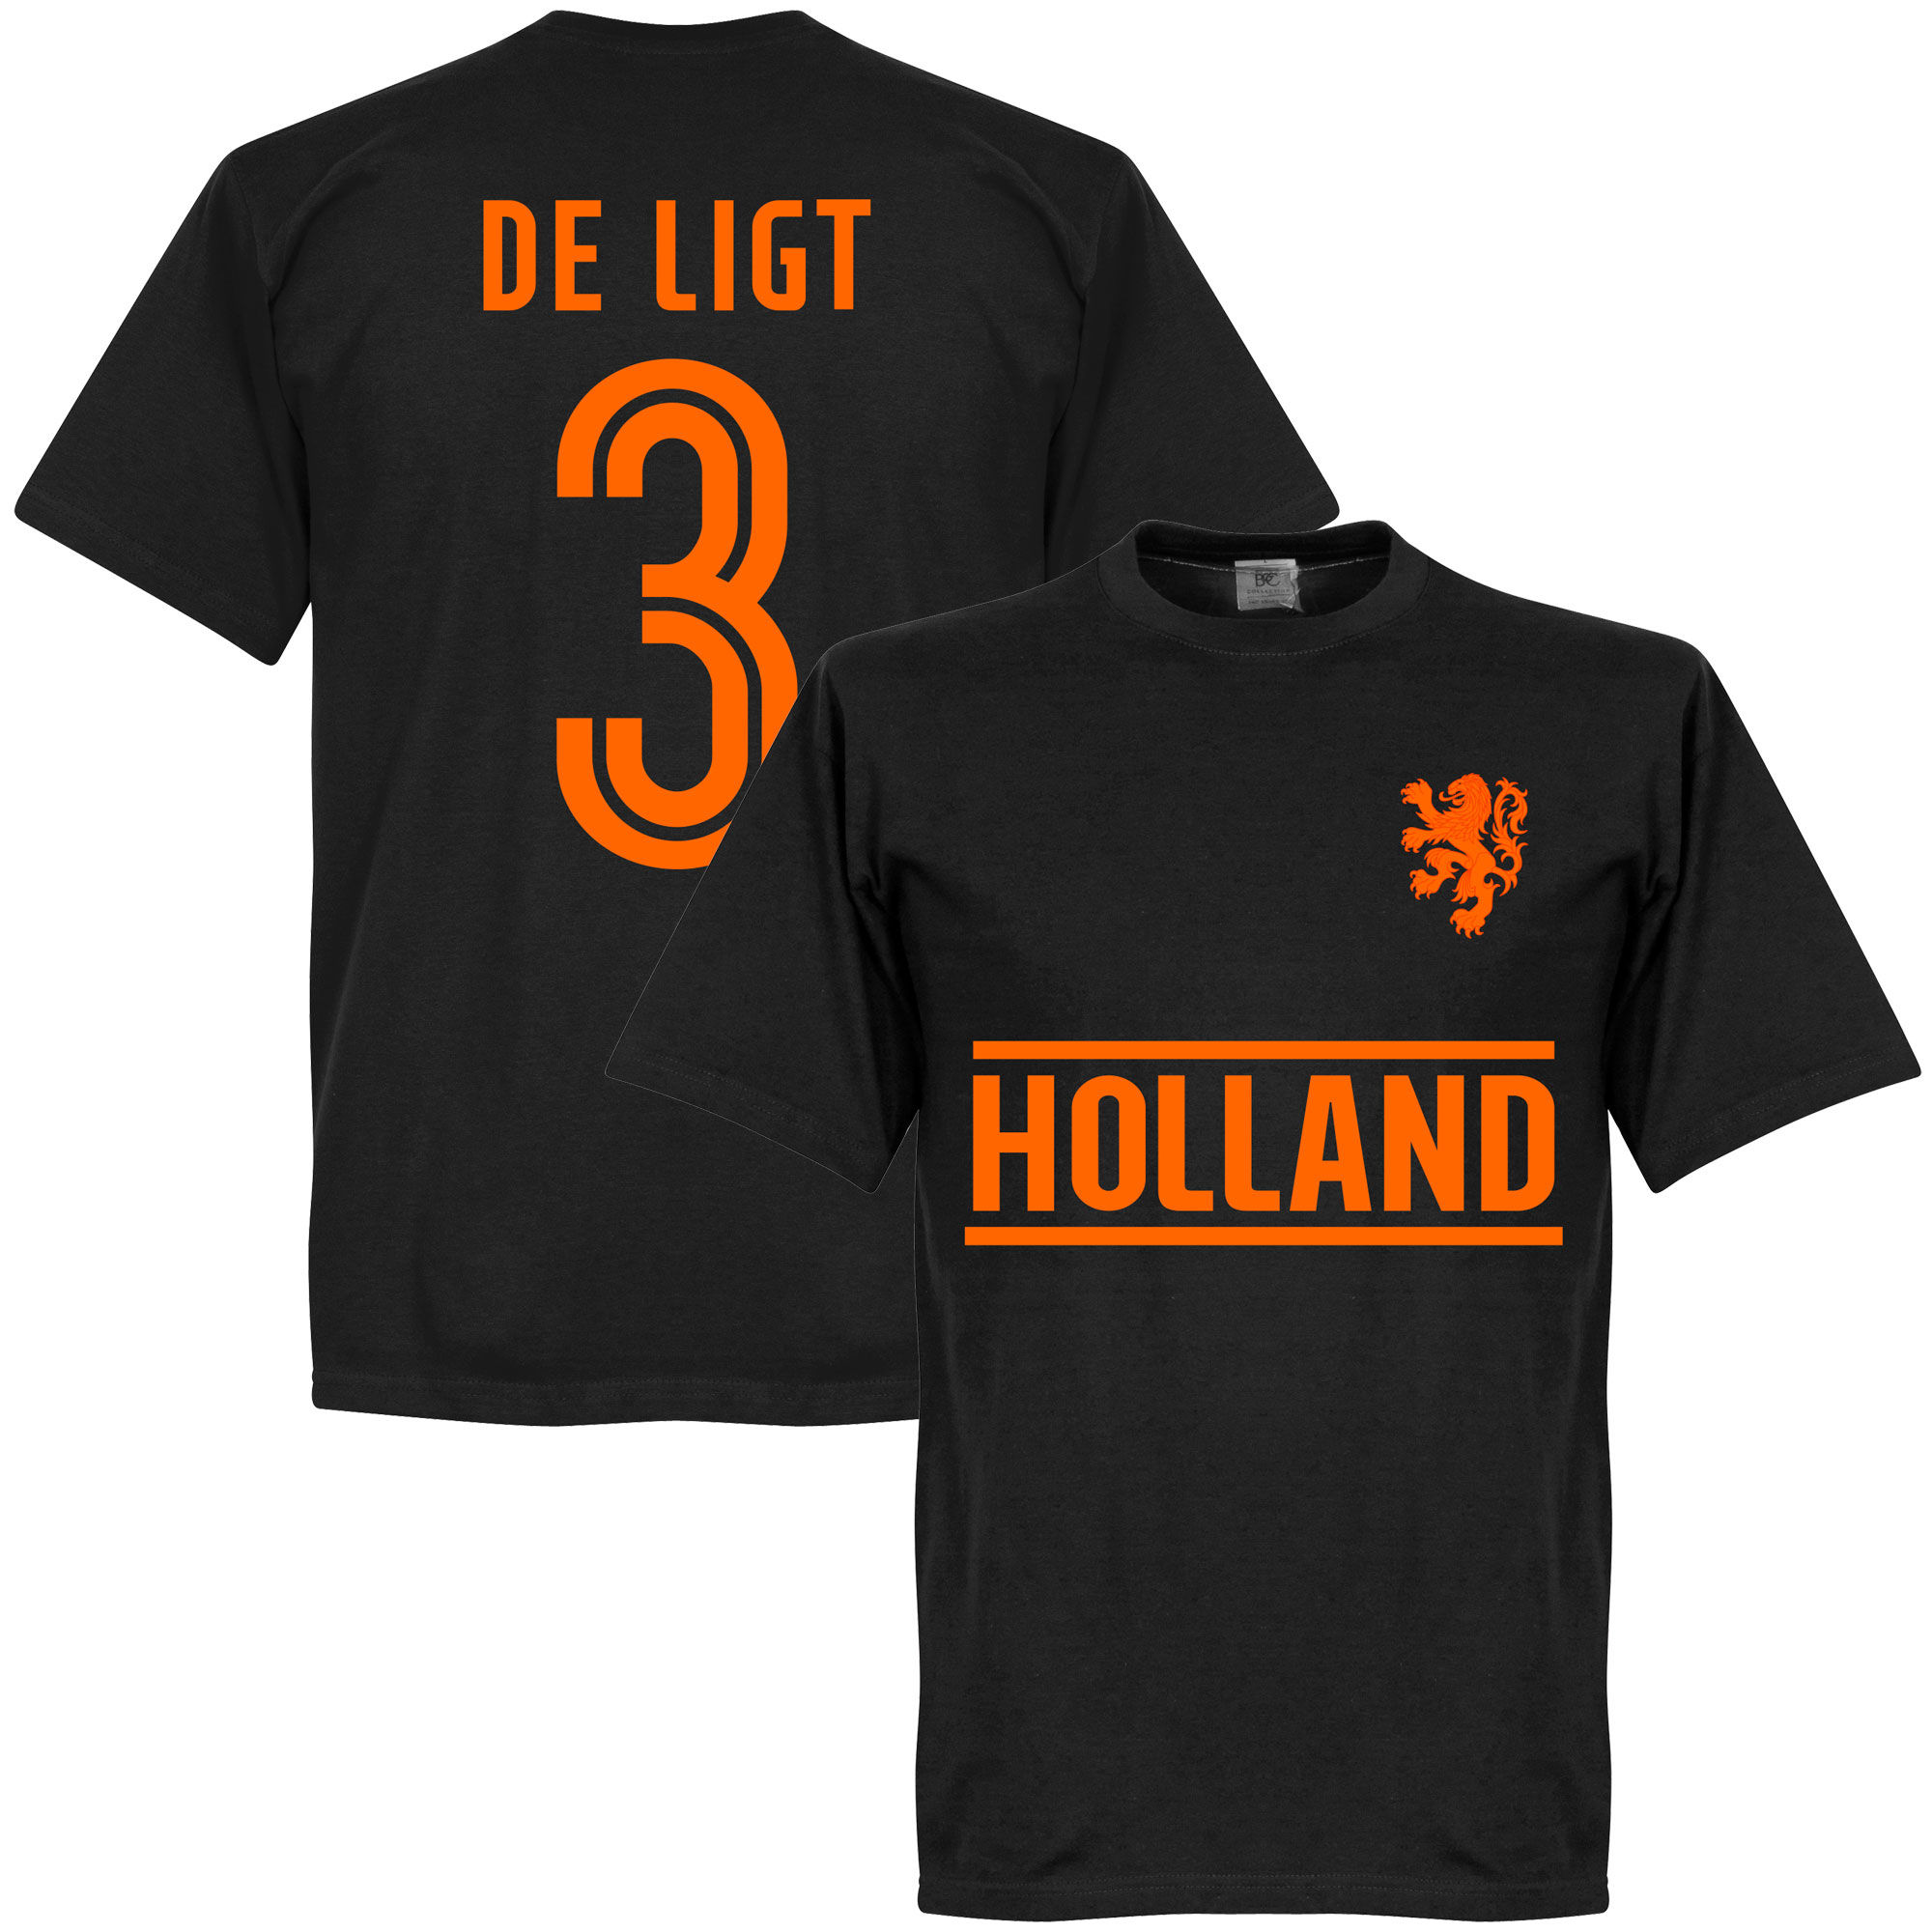 Nizozemí - Tričko - Matthijs de Ligt, černé